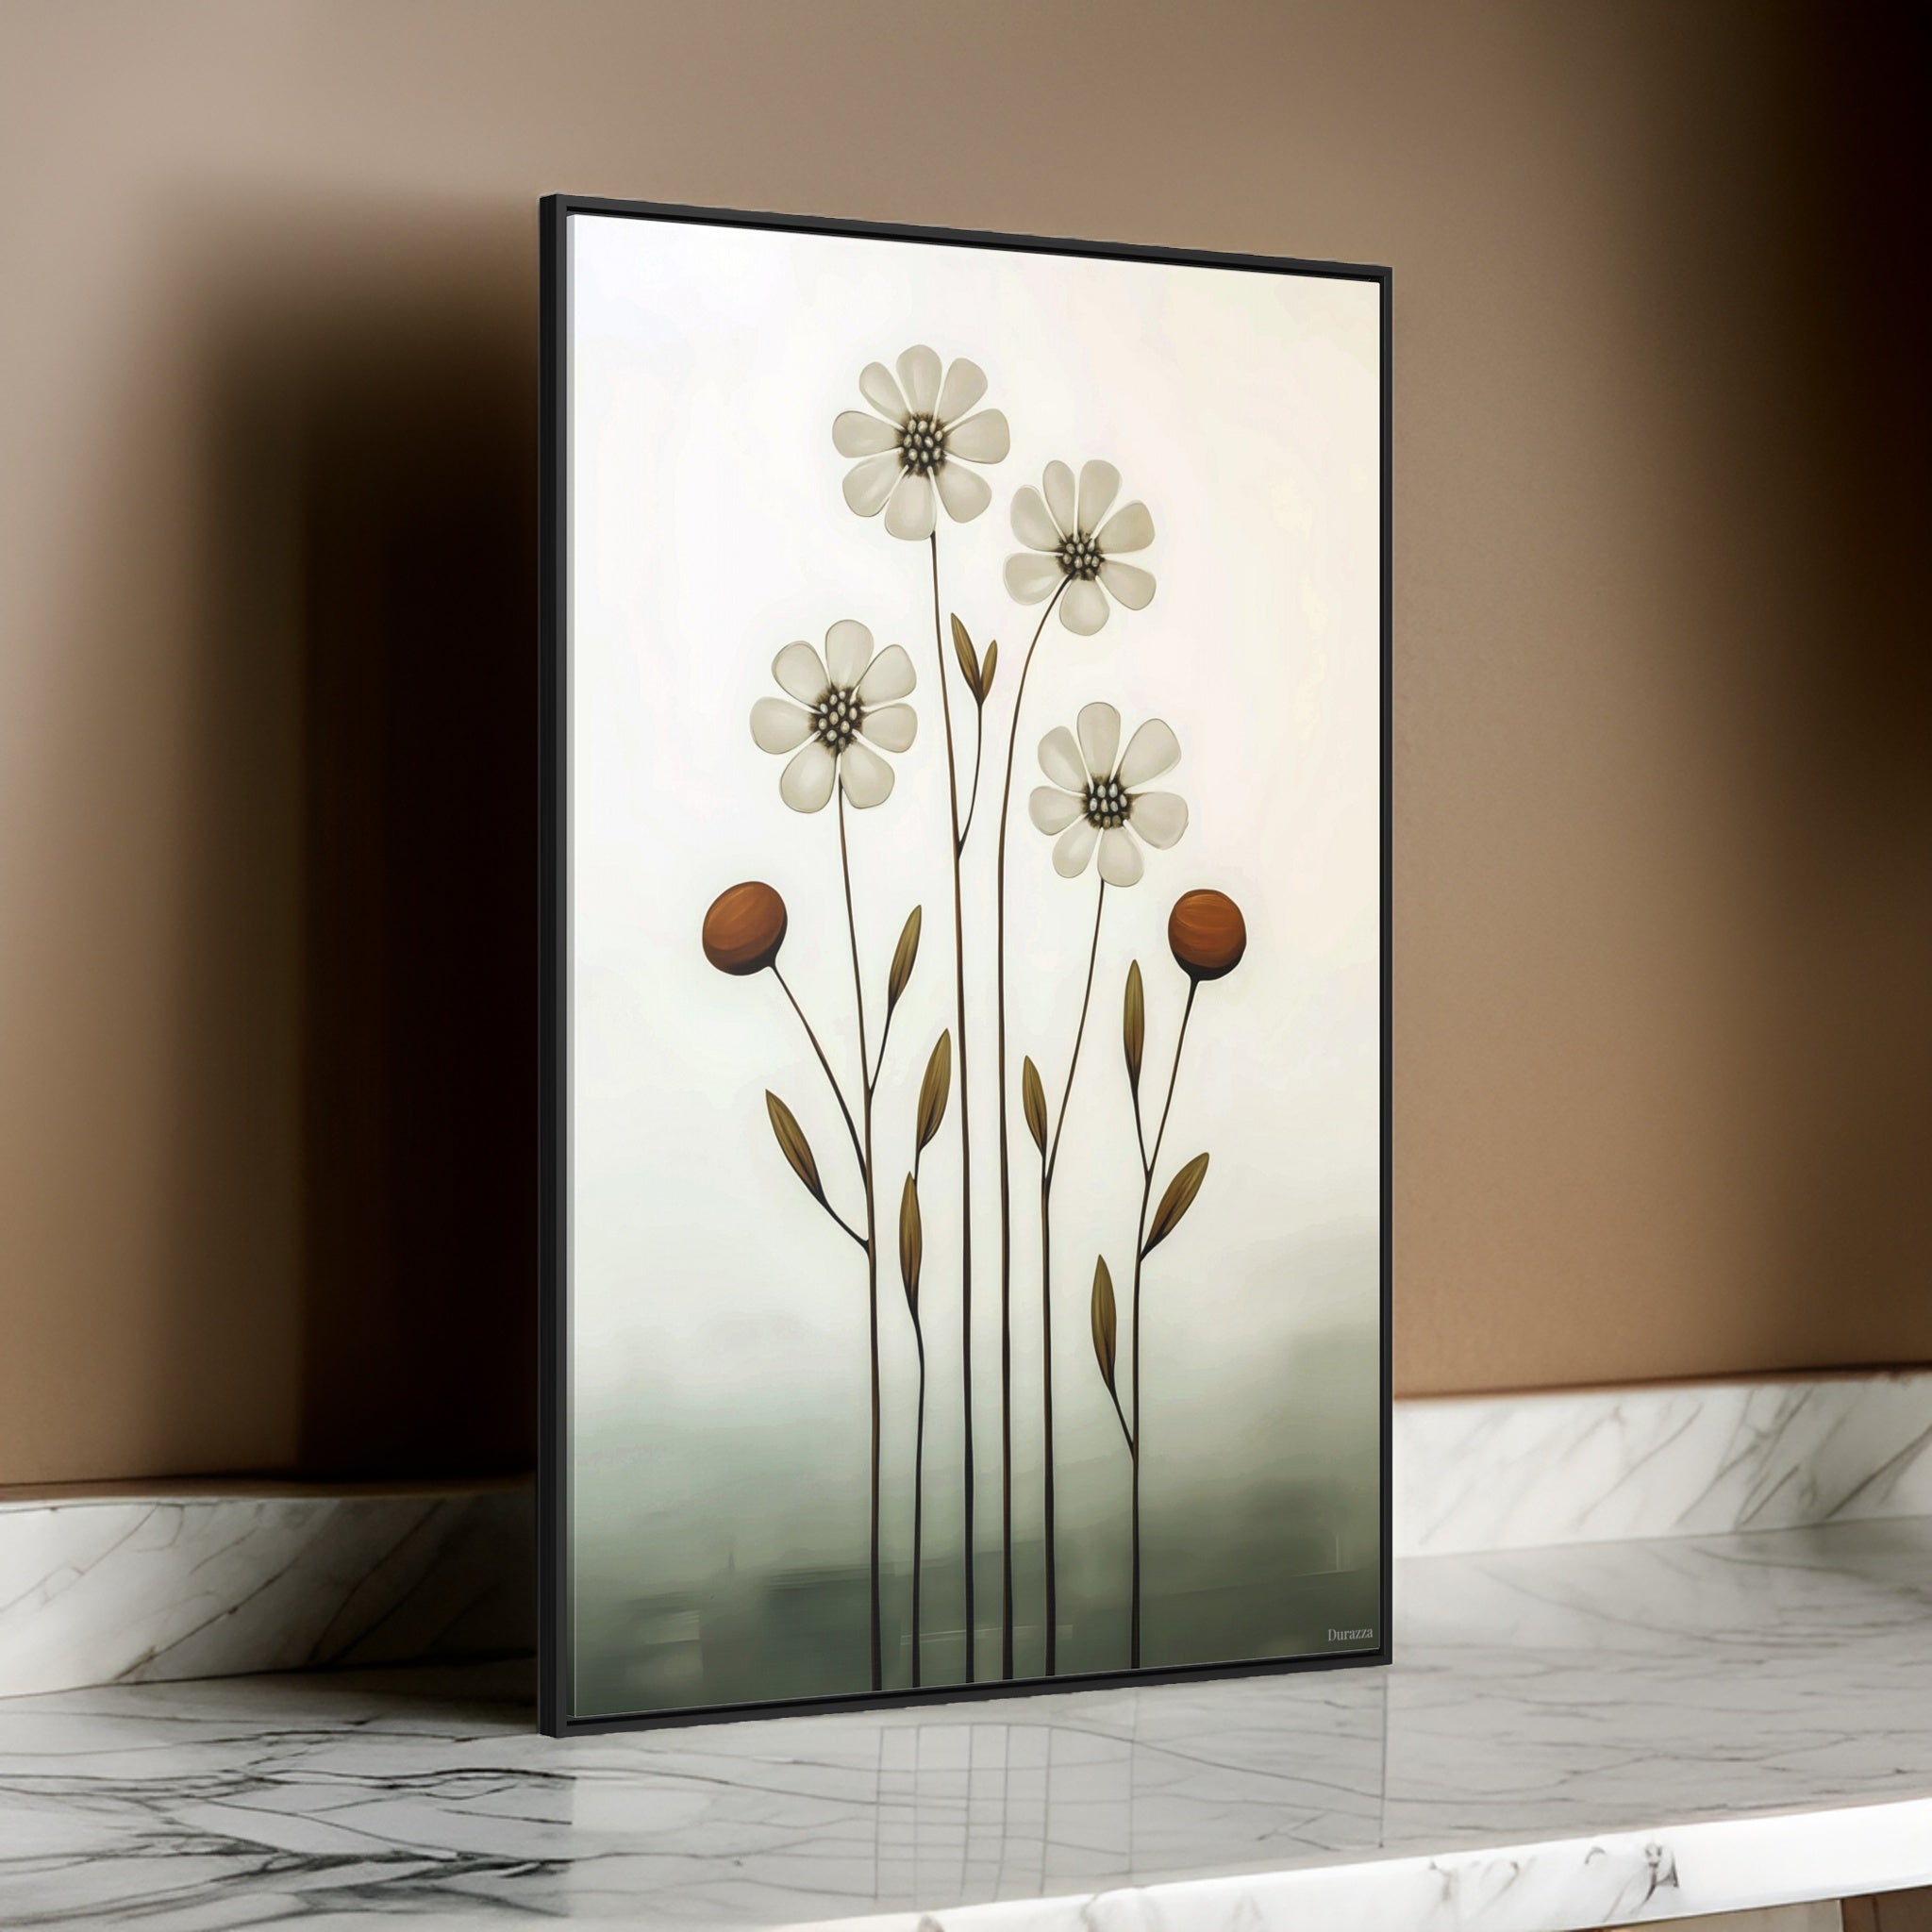 Placid White Flowers Canvas Print: Minimalist Art